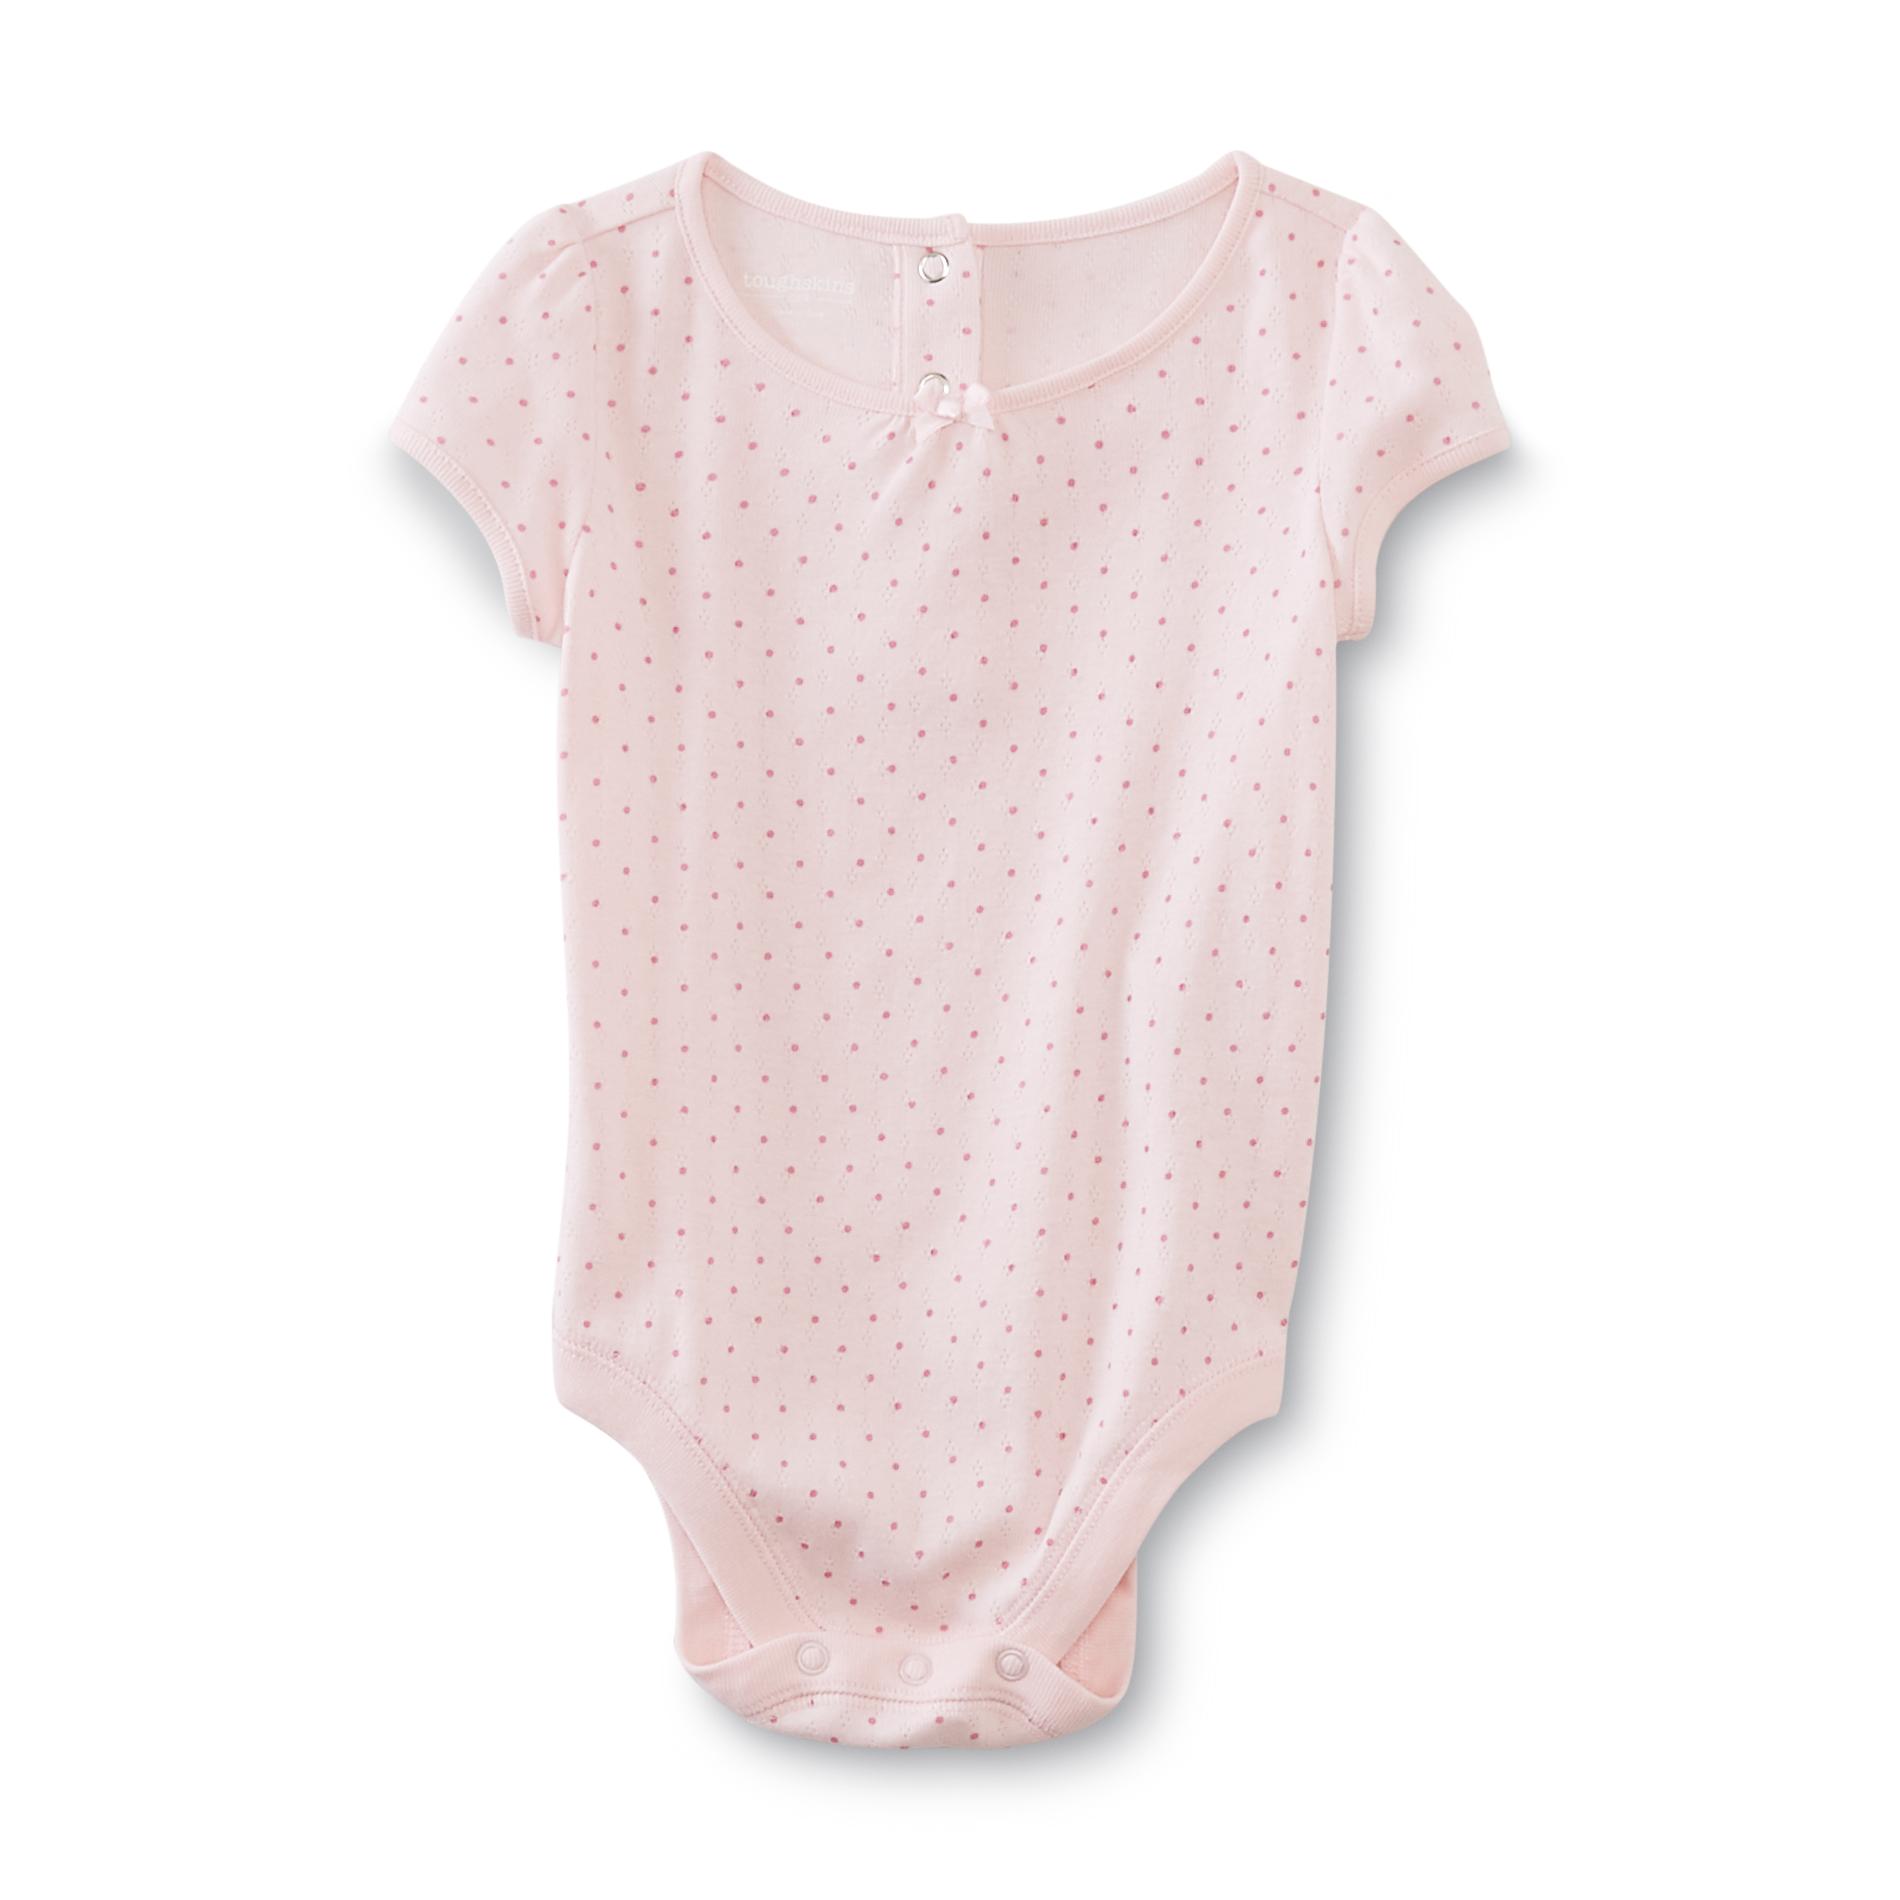 Toughskins Infant Girl's Pointelle Knit Bodysuit - Polka Dot